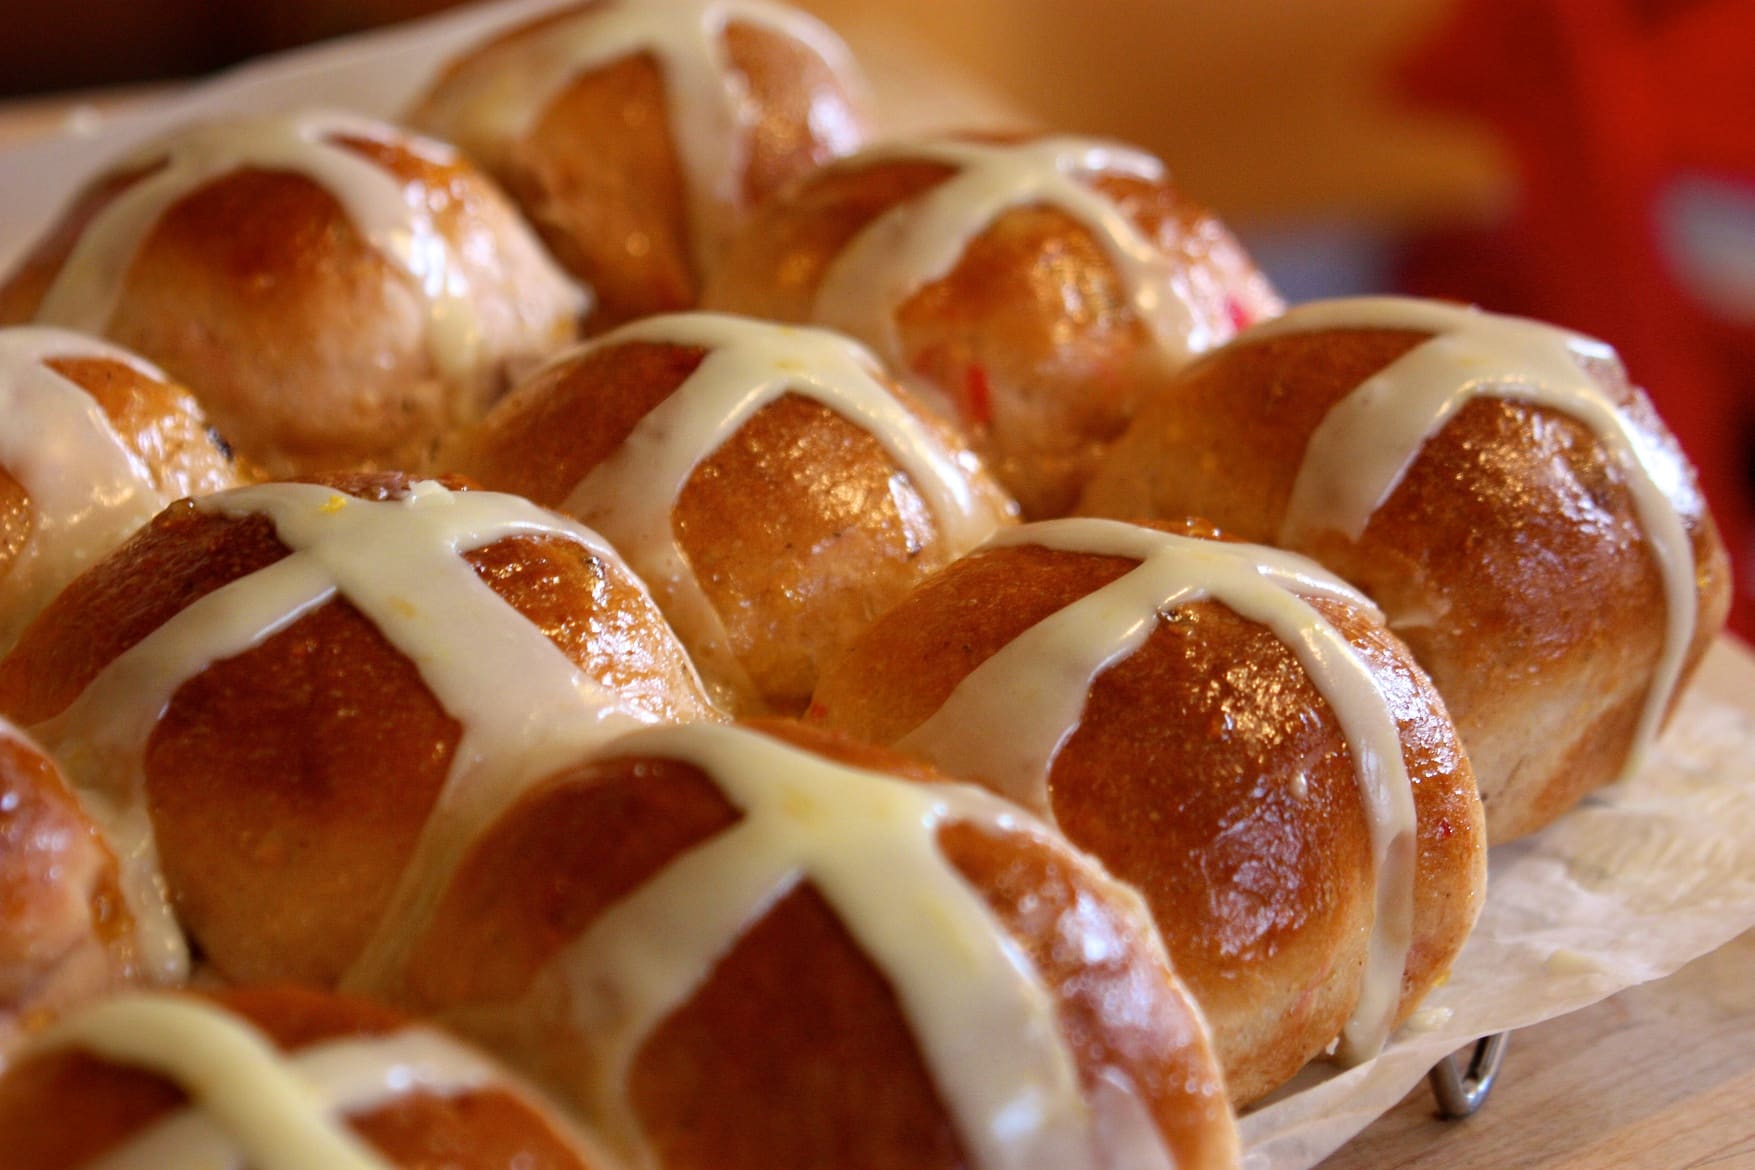 Hot cross buns. 